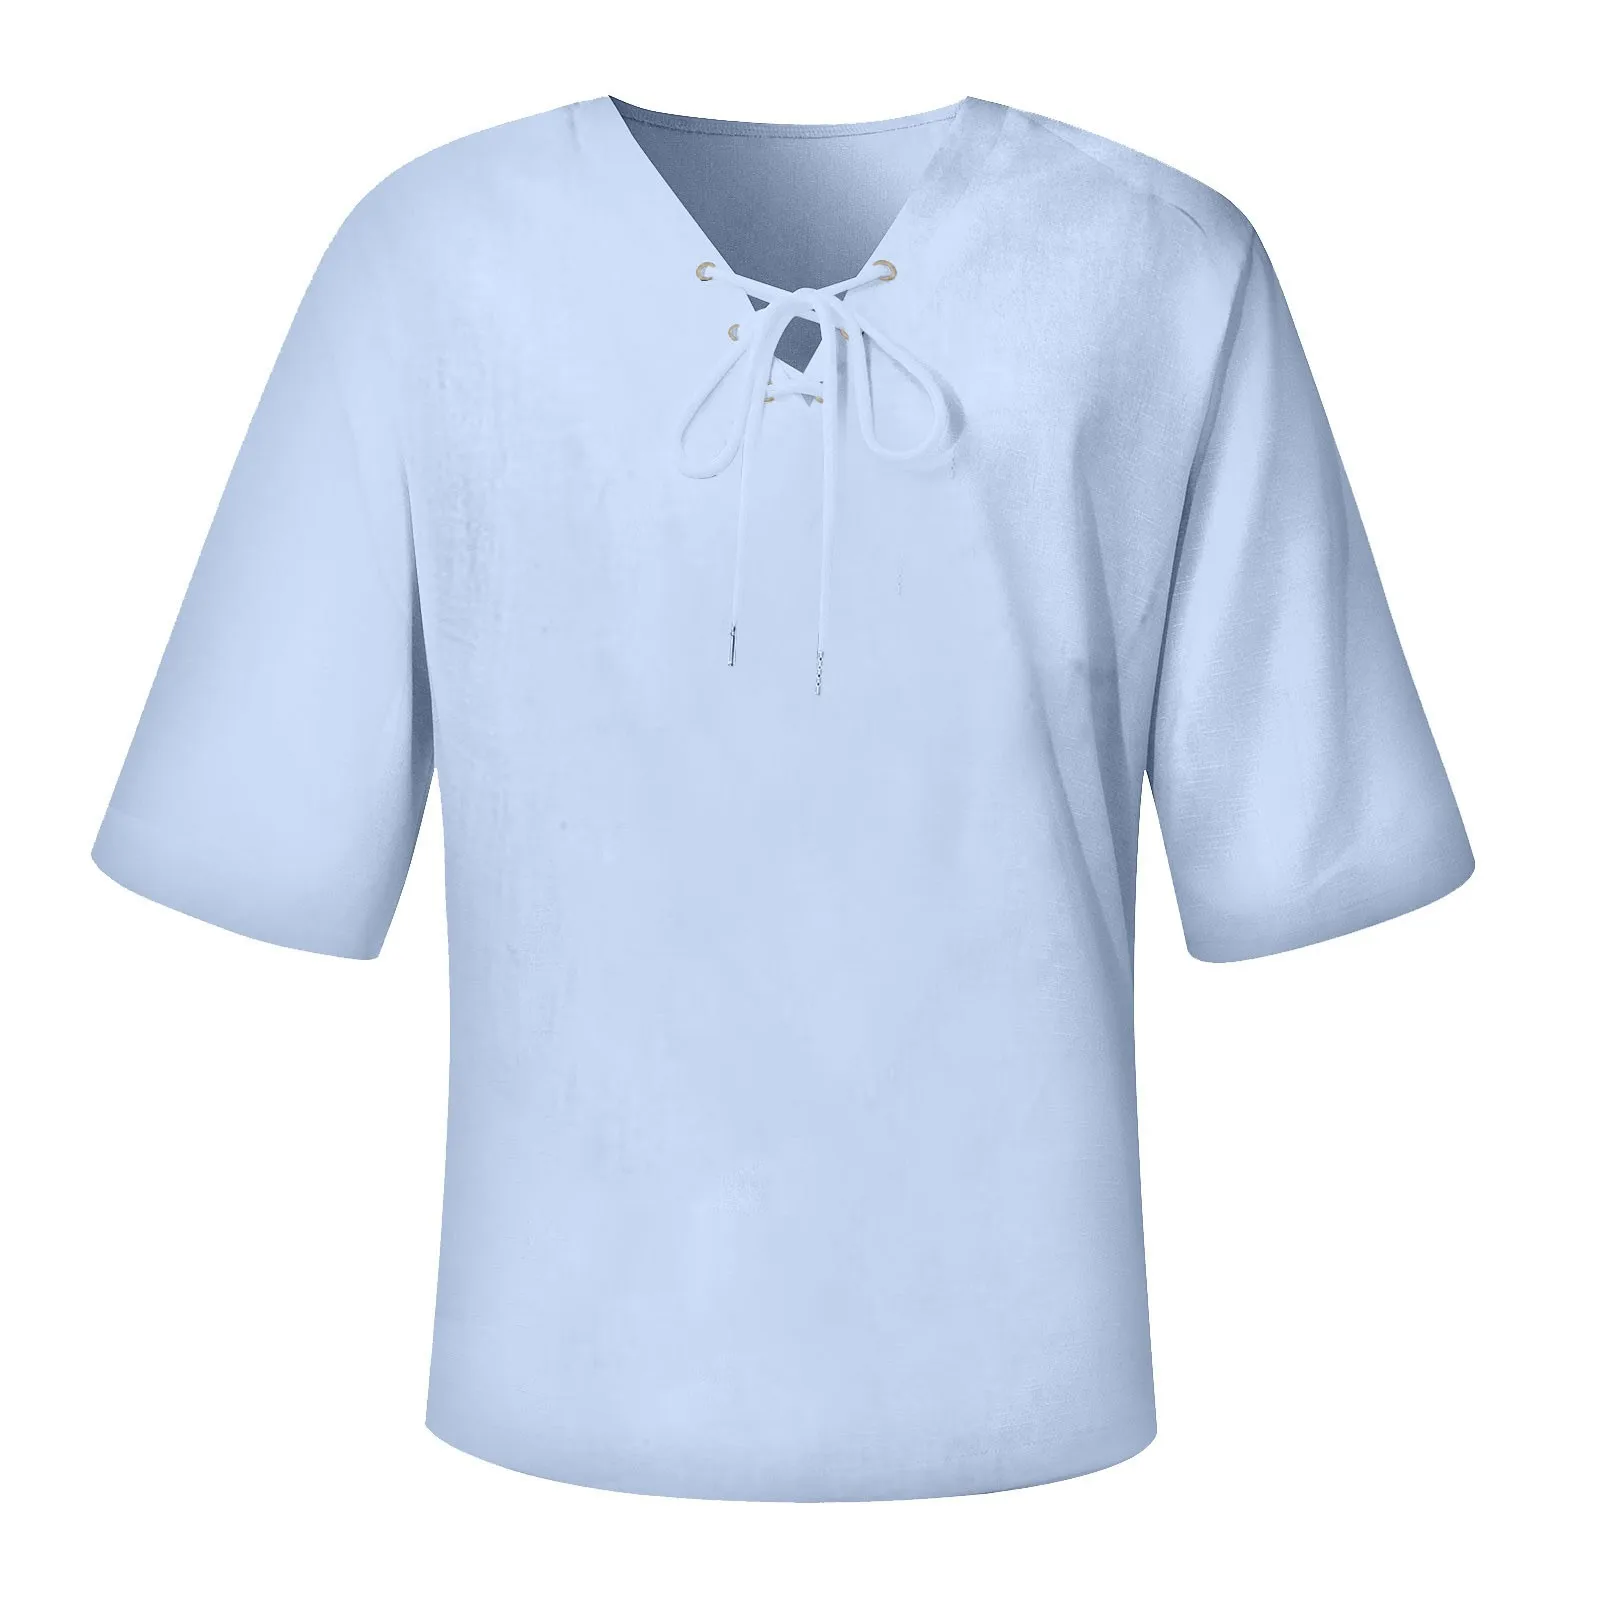 Camisas informales de lino y algodón para hombre, camisas holgadas con botones y cuello levantado, Tops de manga larga de Color sólido para primavera y verano